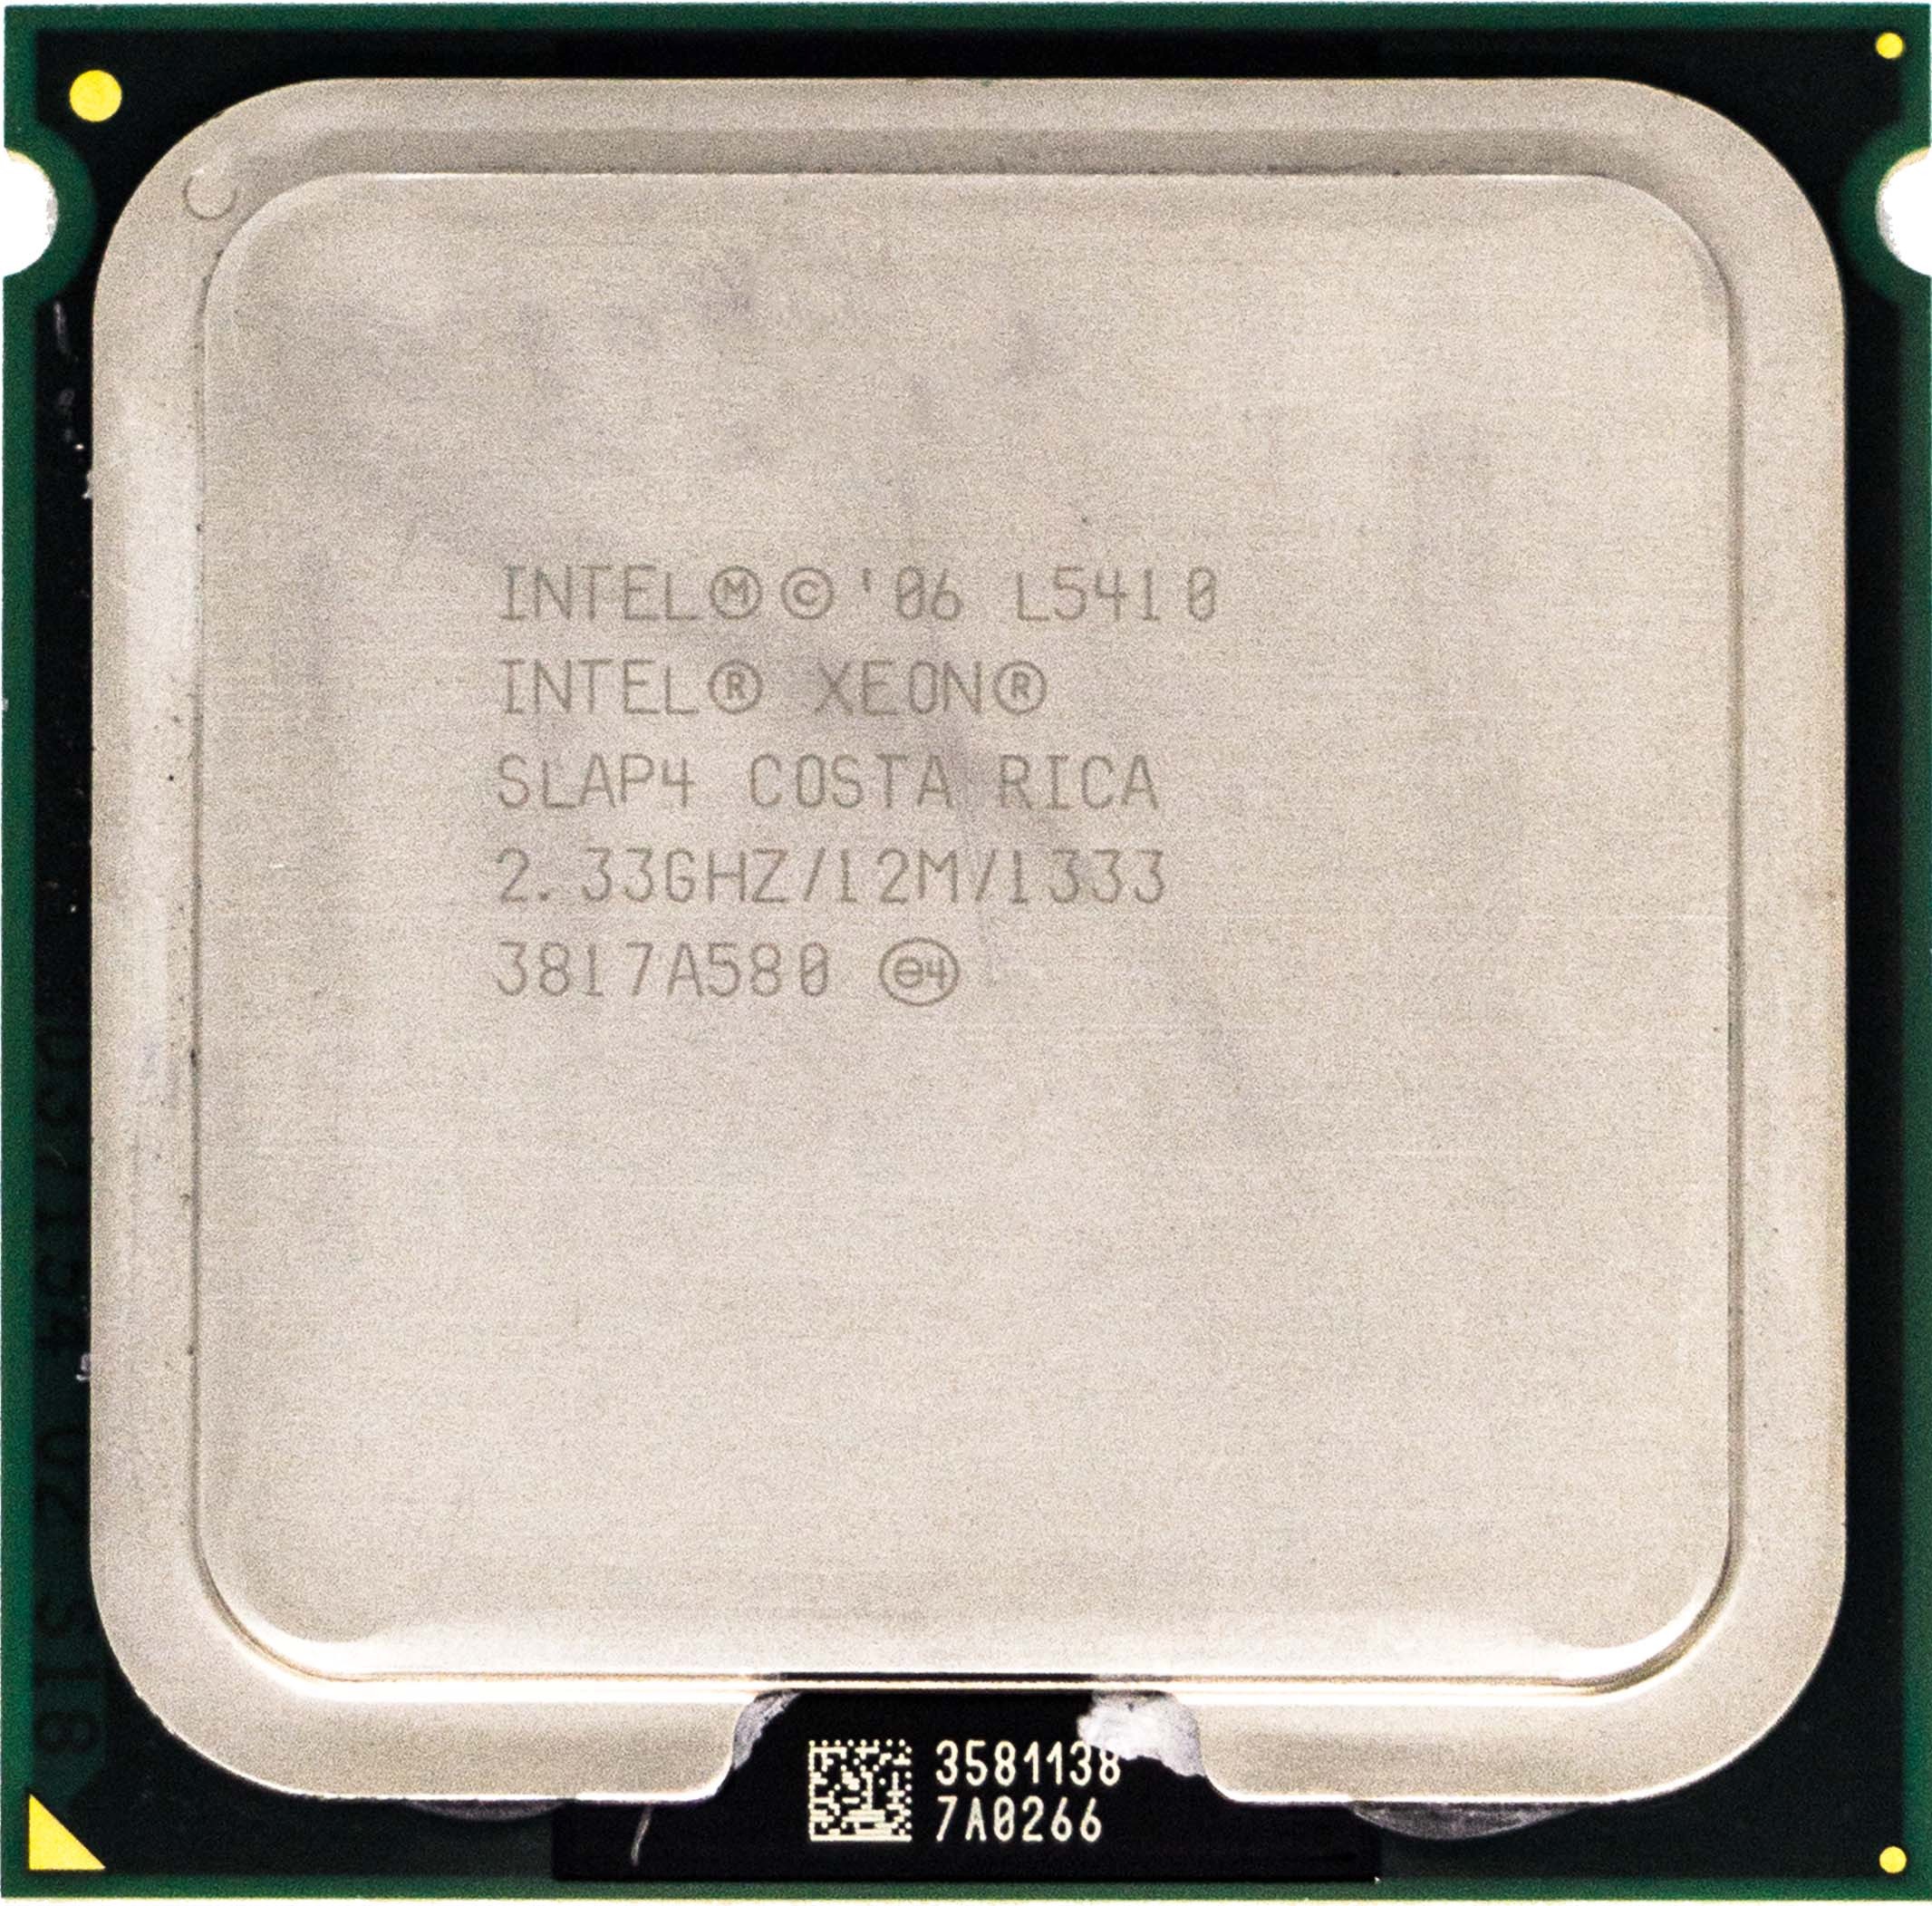 Intel Xeon L5410 (SLAP4) 4-Core 2.33Ghz LGA771 12MB 50W CPU Processor